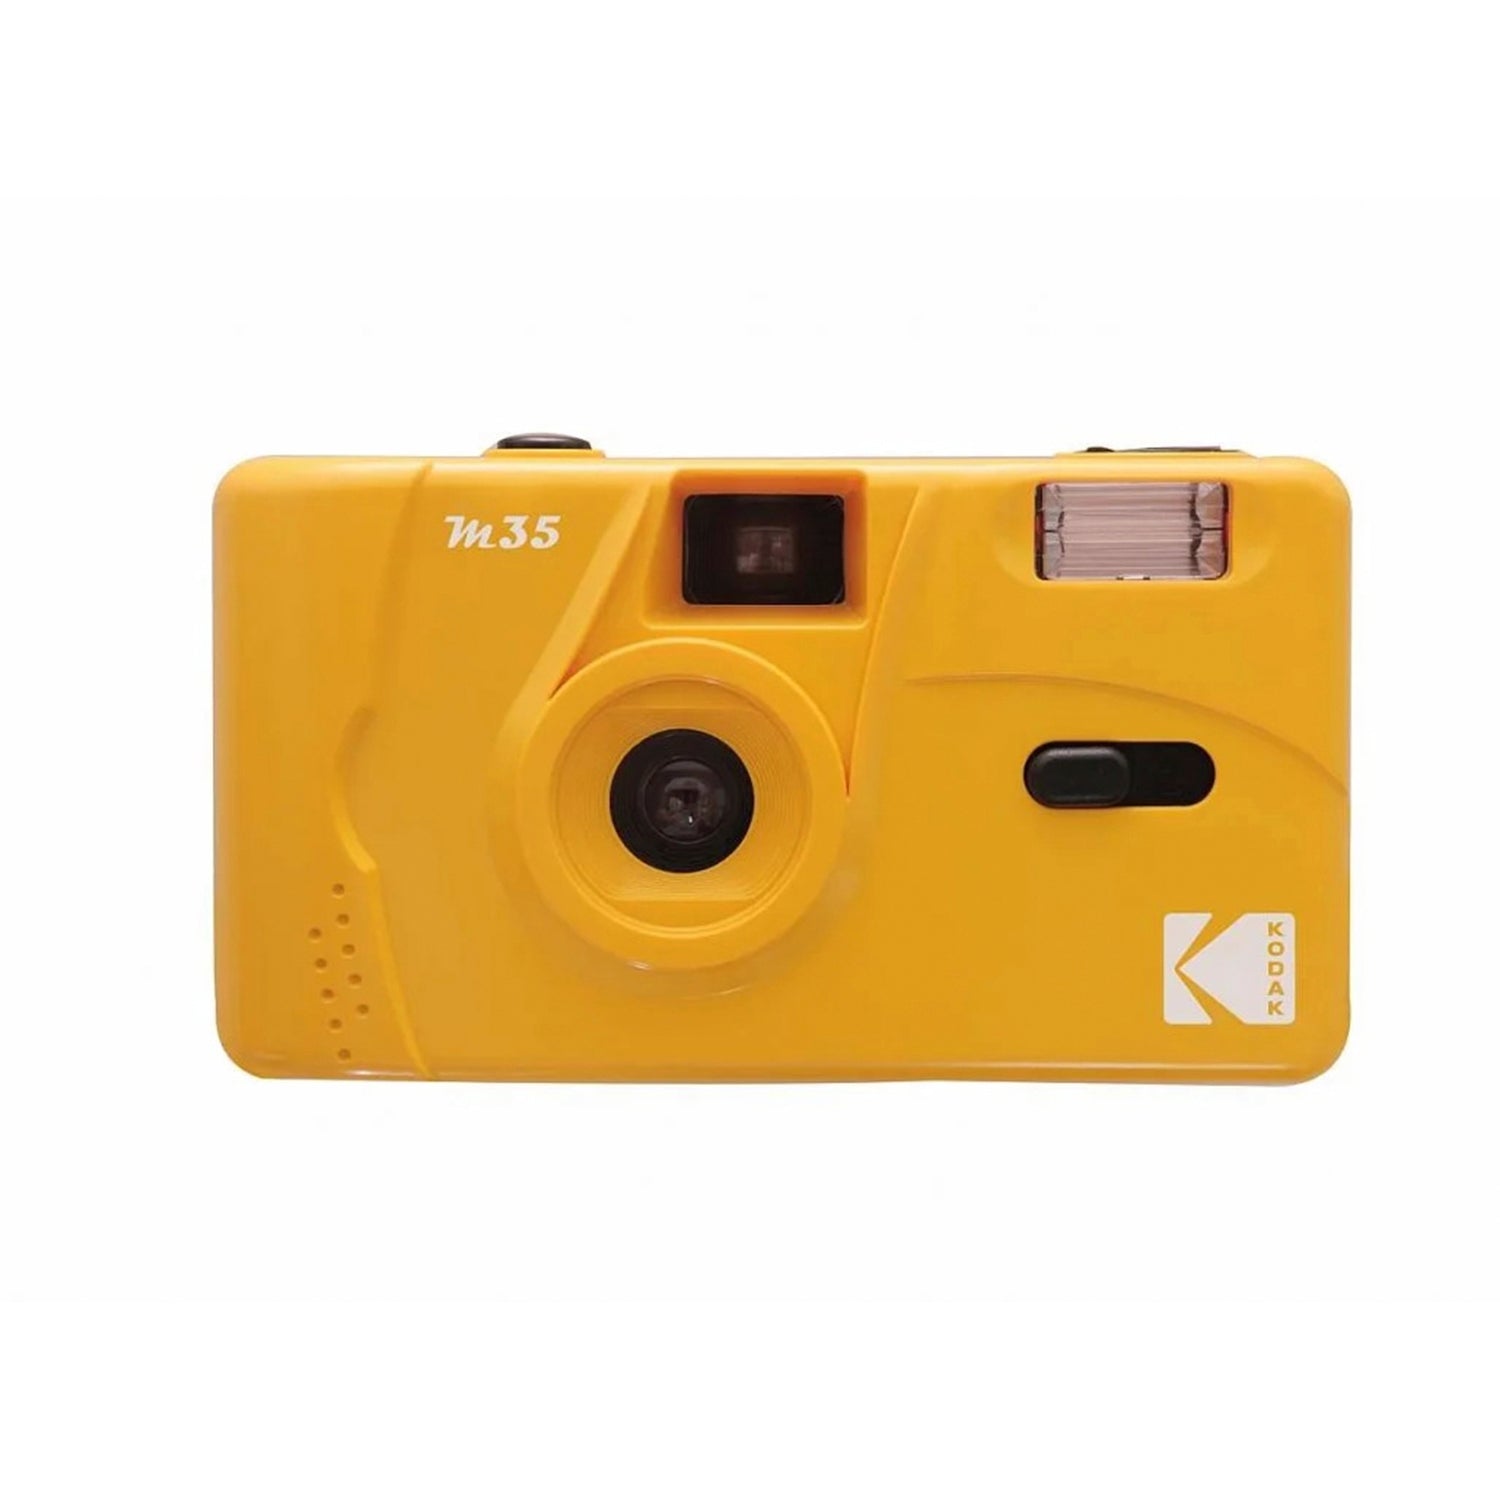 Kodak M35 Refillable Film Camera